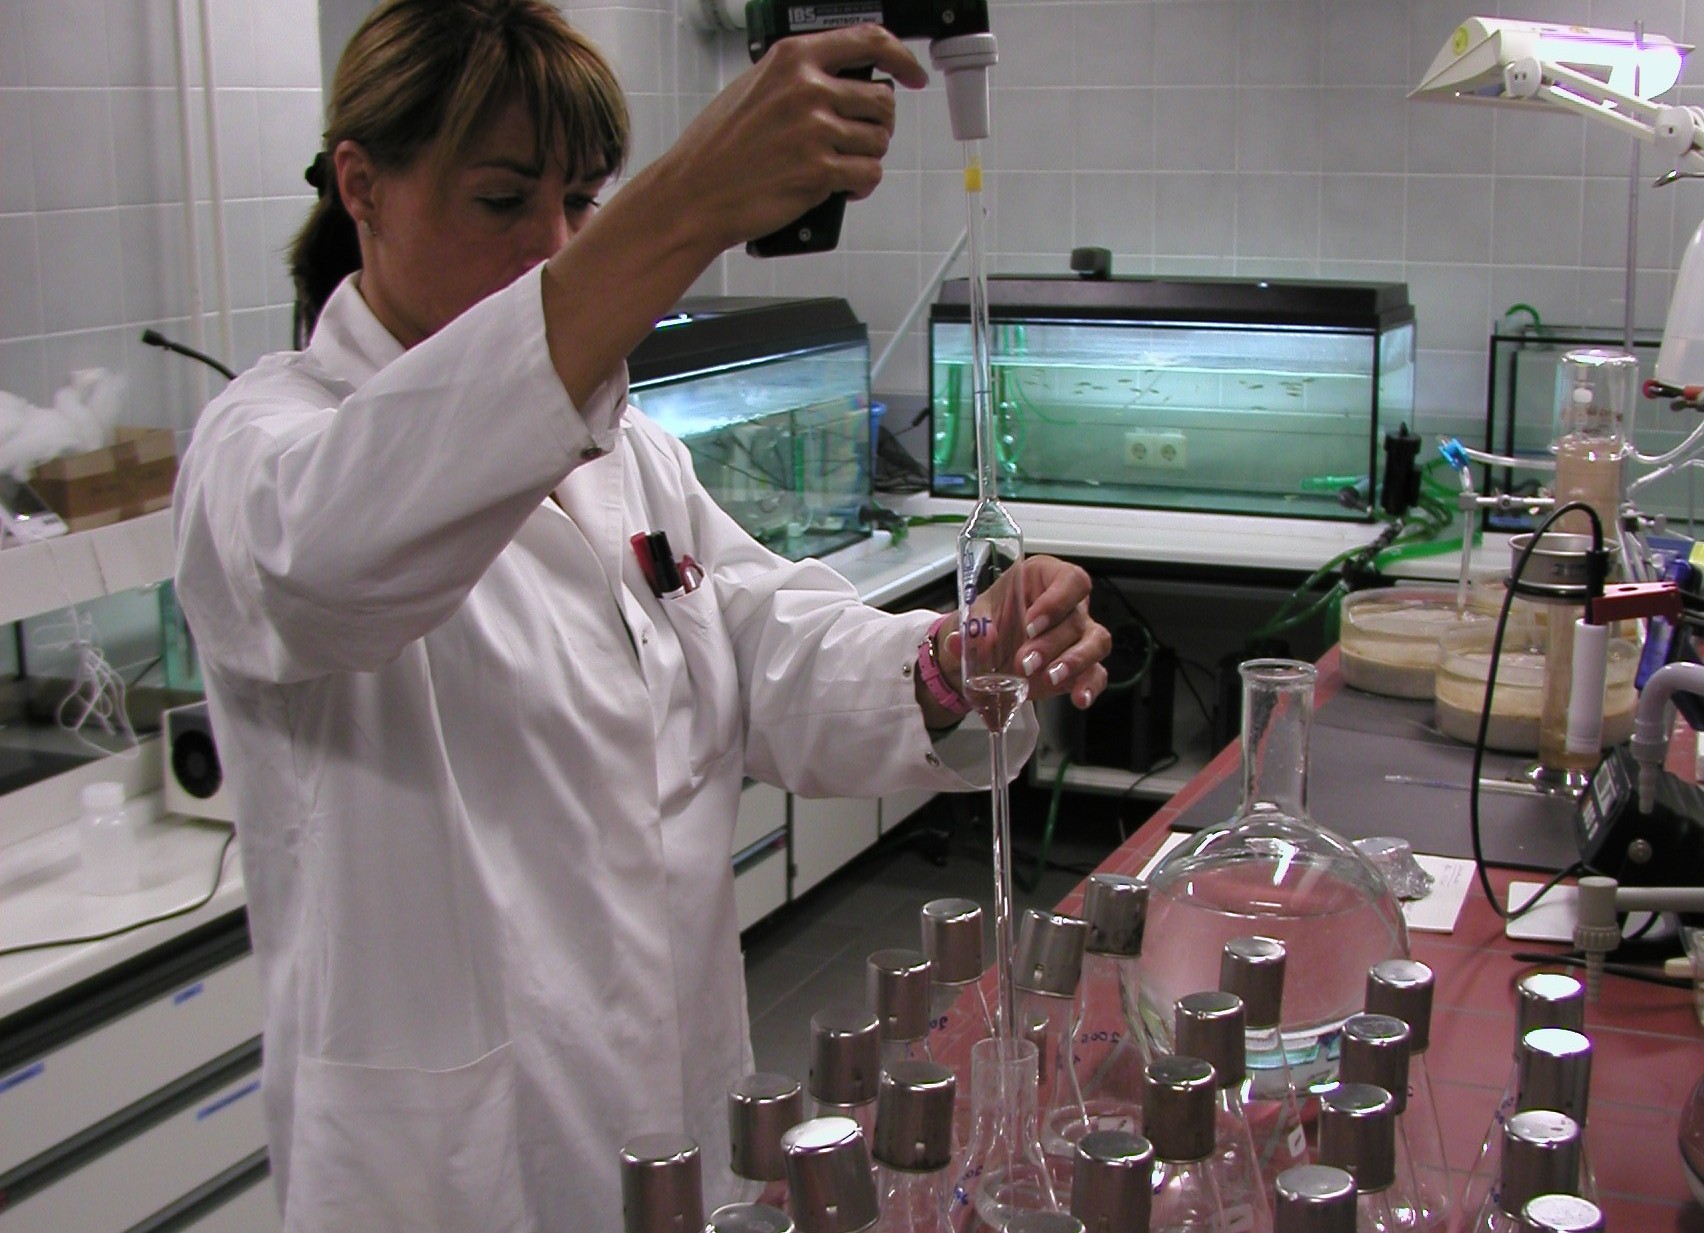 Eine Frau im Chemiekittel arbeitet im Labor. Sie befüllt Glasgefäße mit Flüssigkeit.